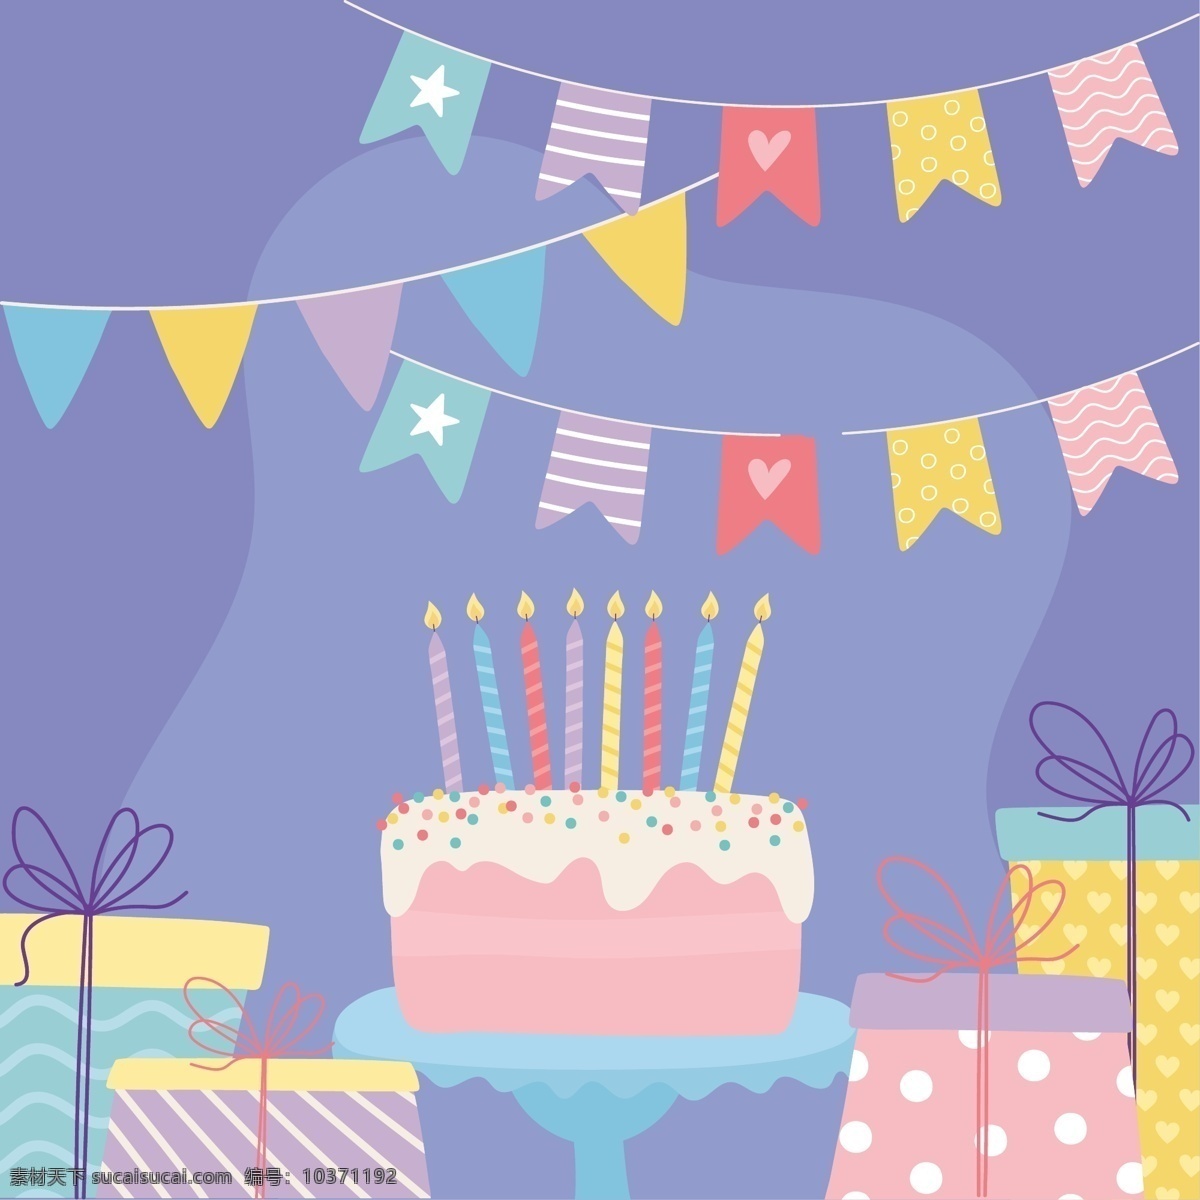 手绘 淡 彩 生日 手绘淡彩生日 卡通 可爱 卡哇伊 卡片 封面 生日快乐 礼盒 汽球 蛋糕 卡通设计